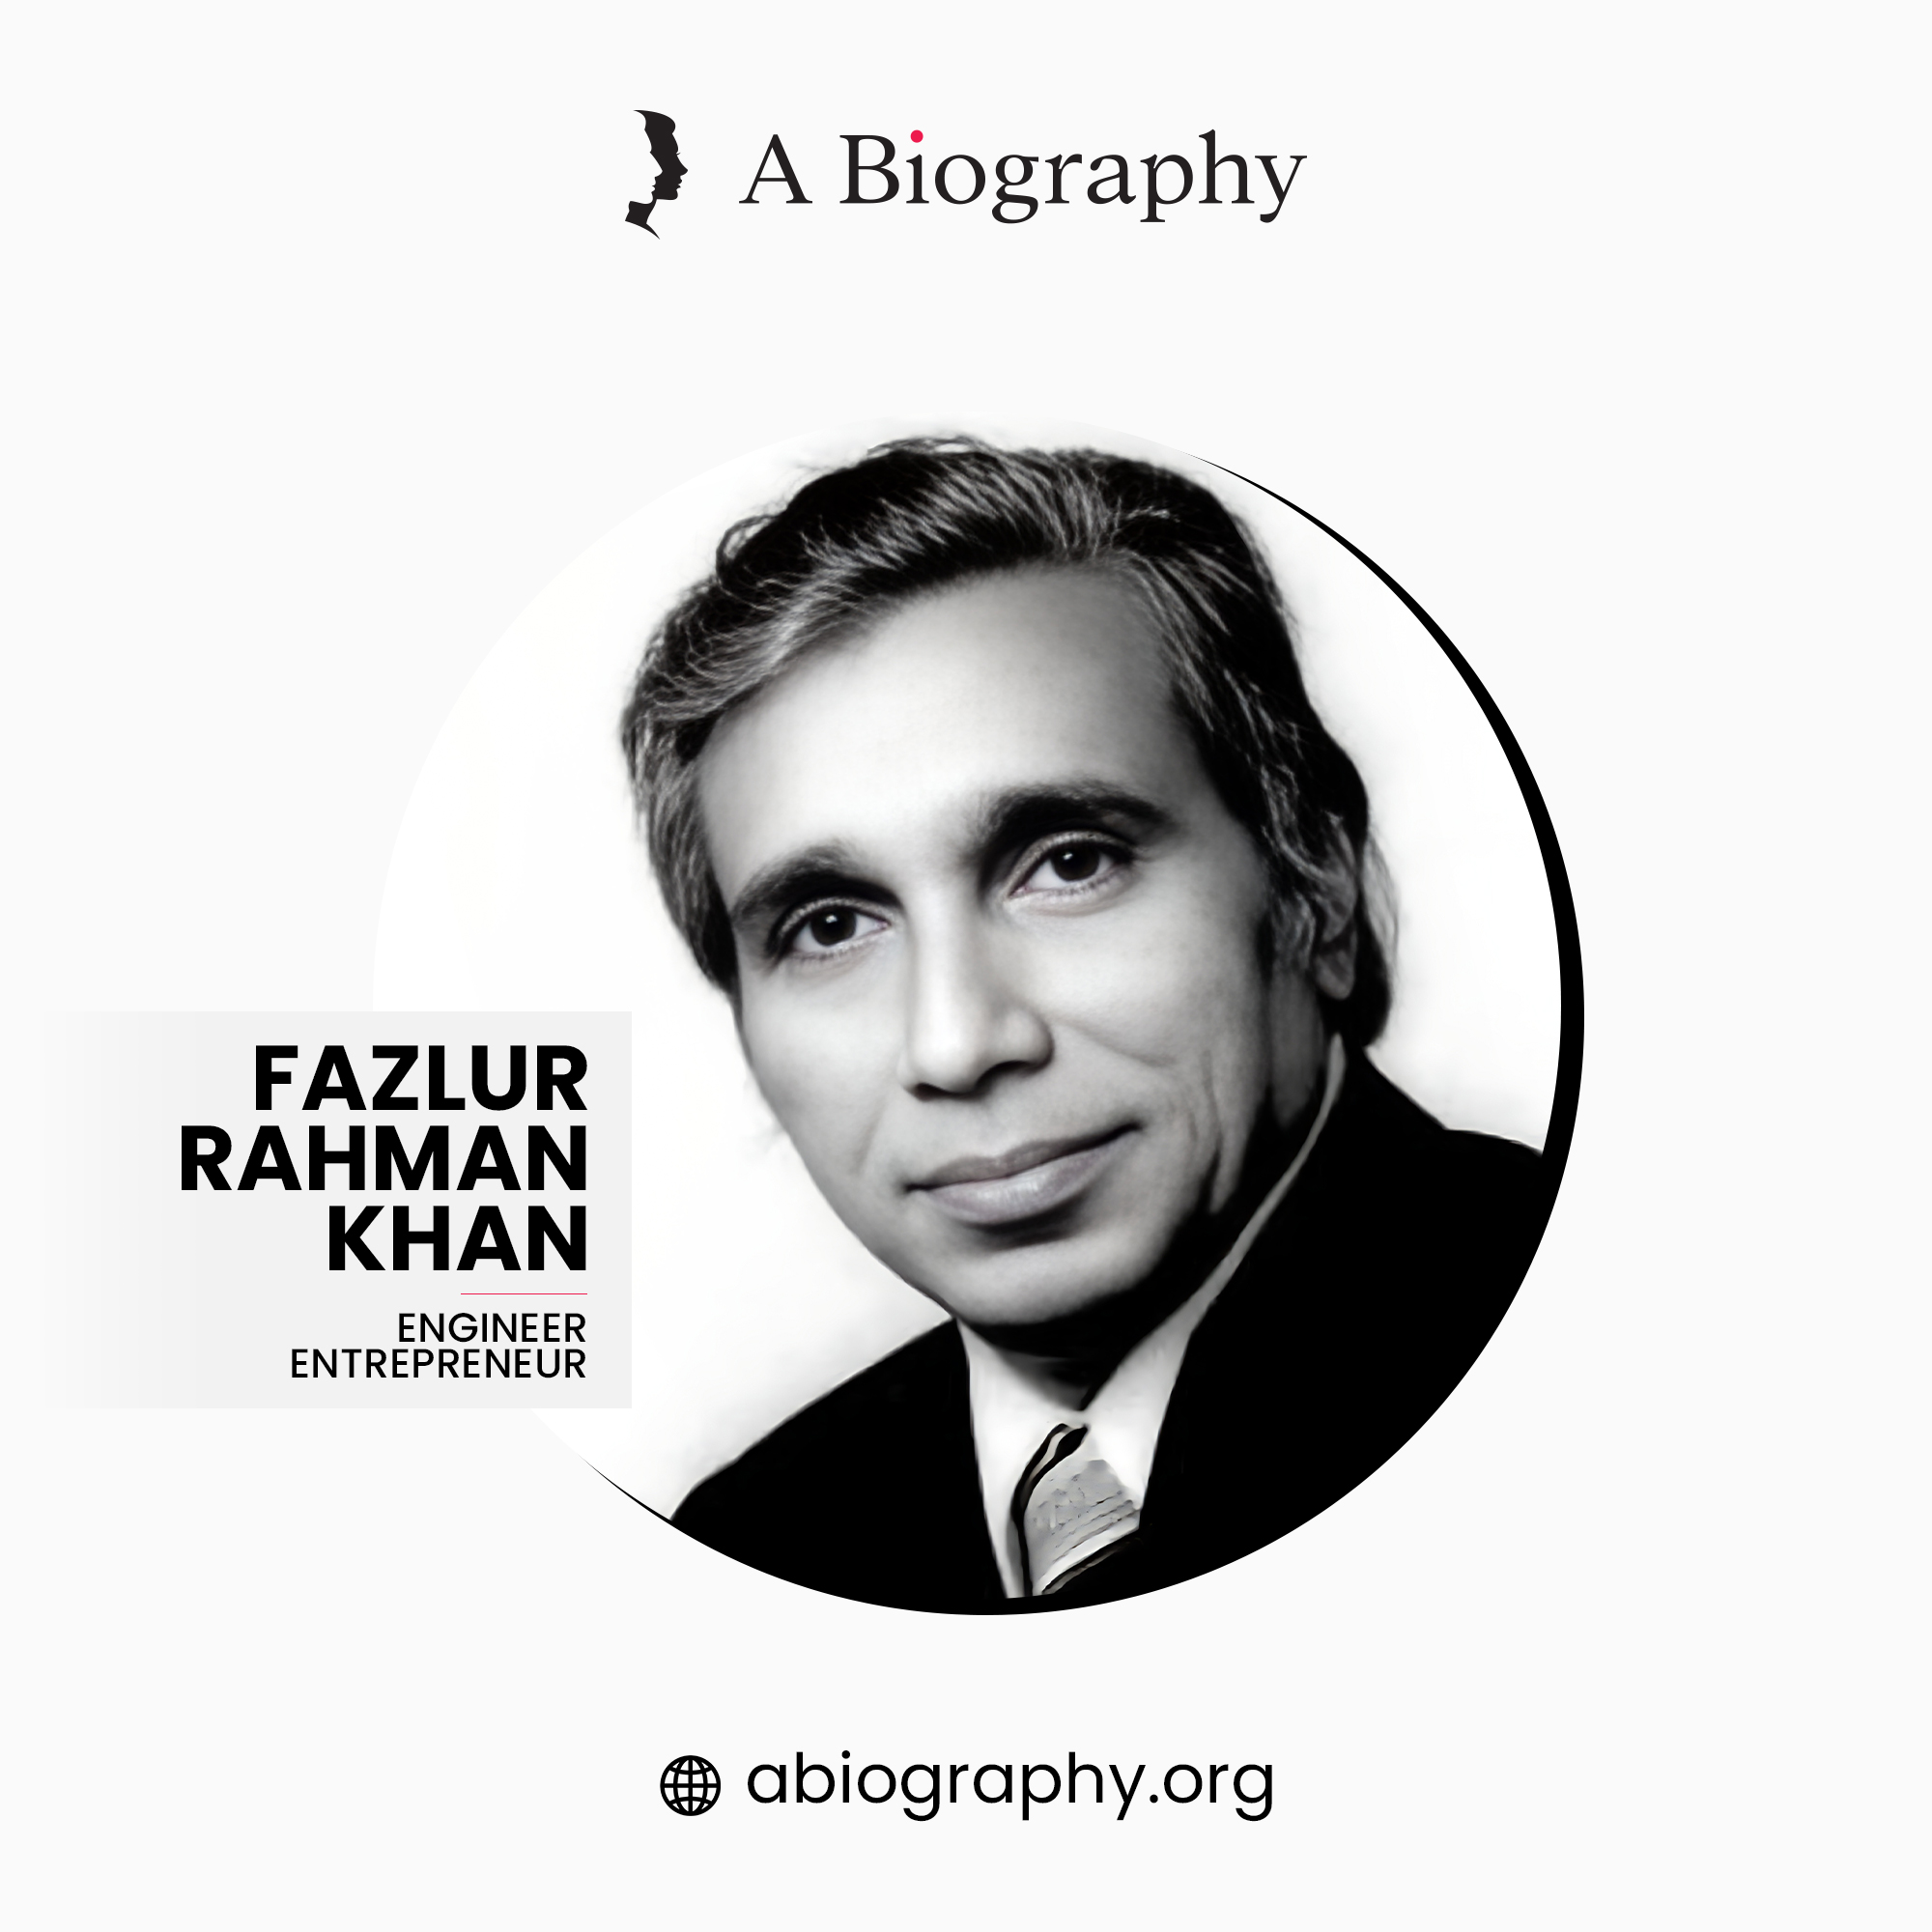 A BIOGRAPHY OF FAZLUR RAHMAN KHAN